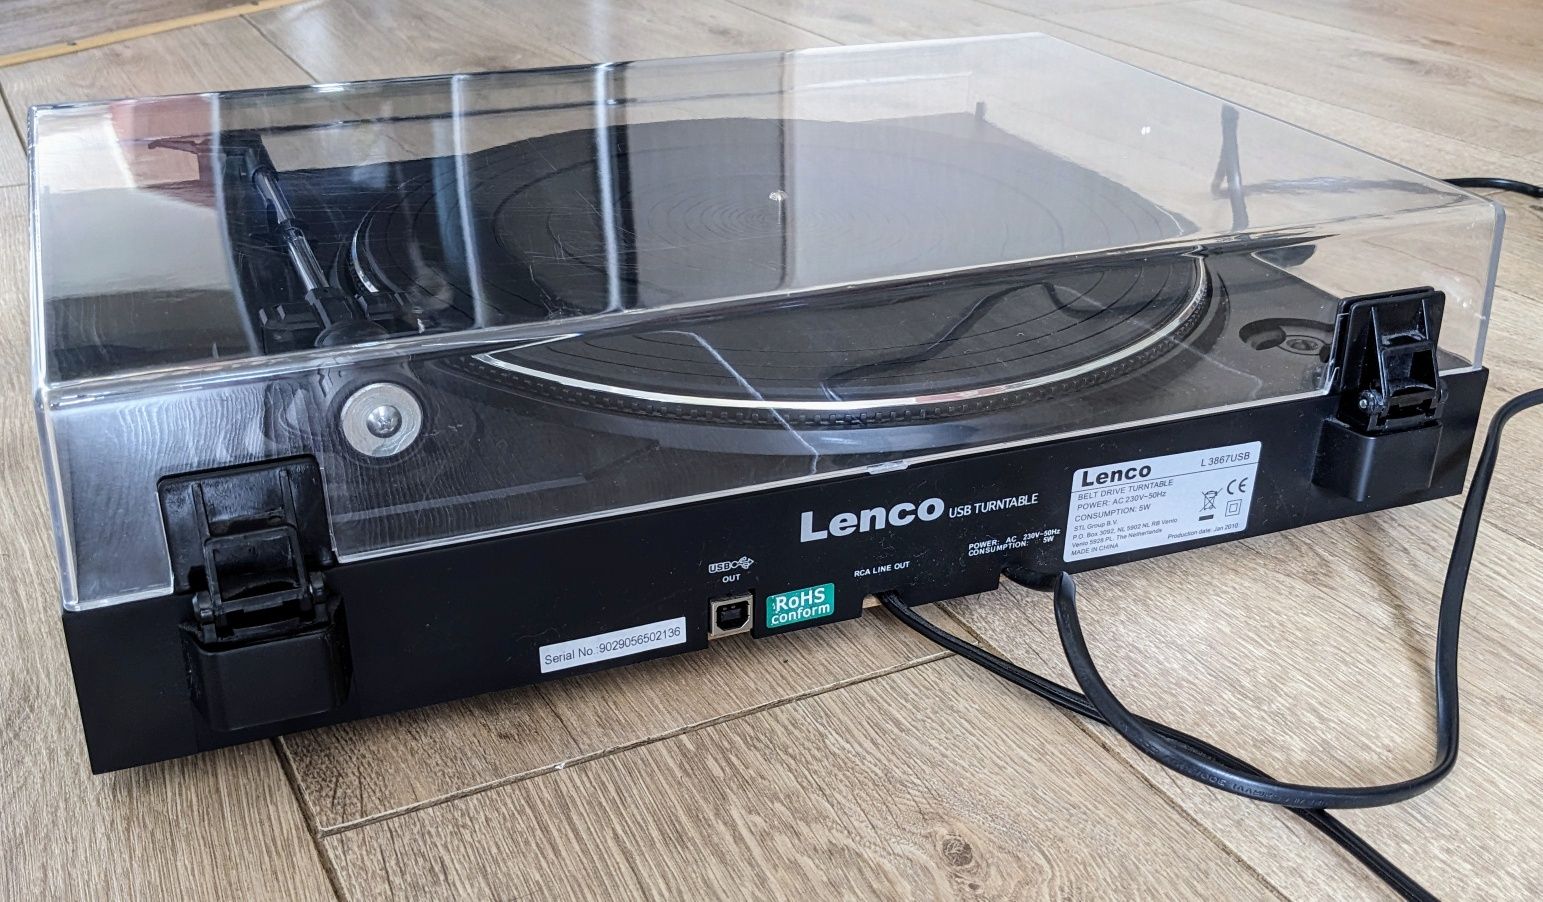 Проигрыватель виниловых пластинок Lenco L-3867 (USB выход на ПК)
П